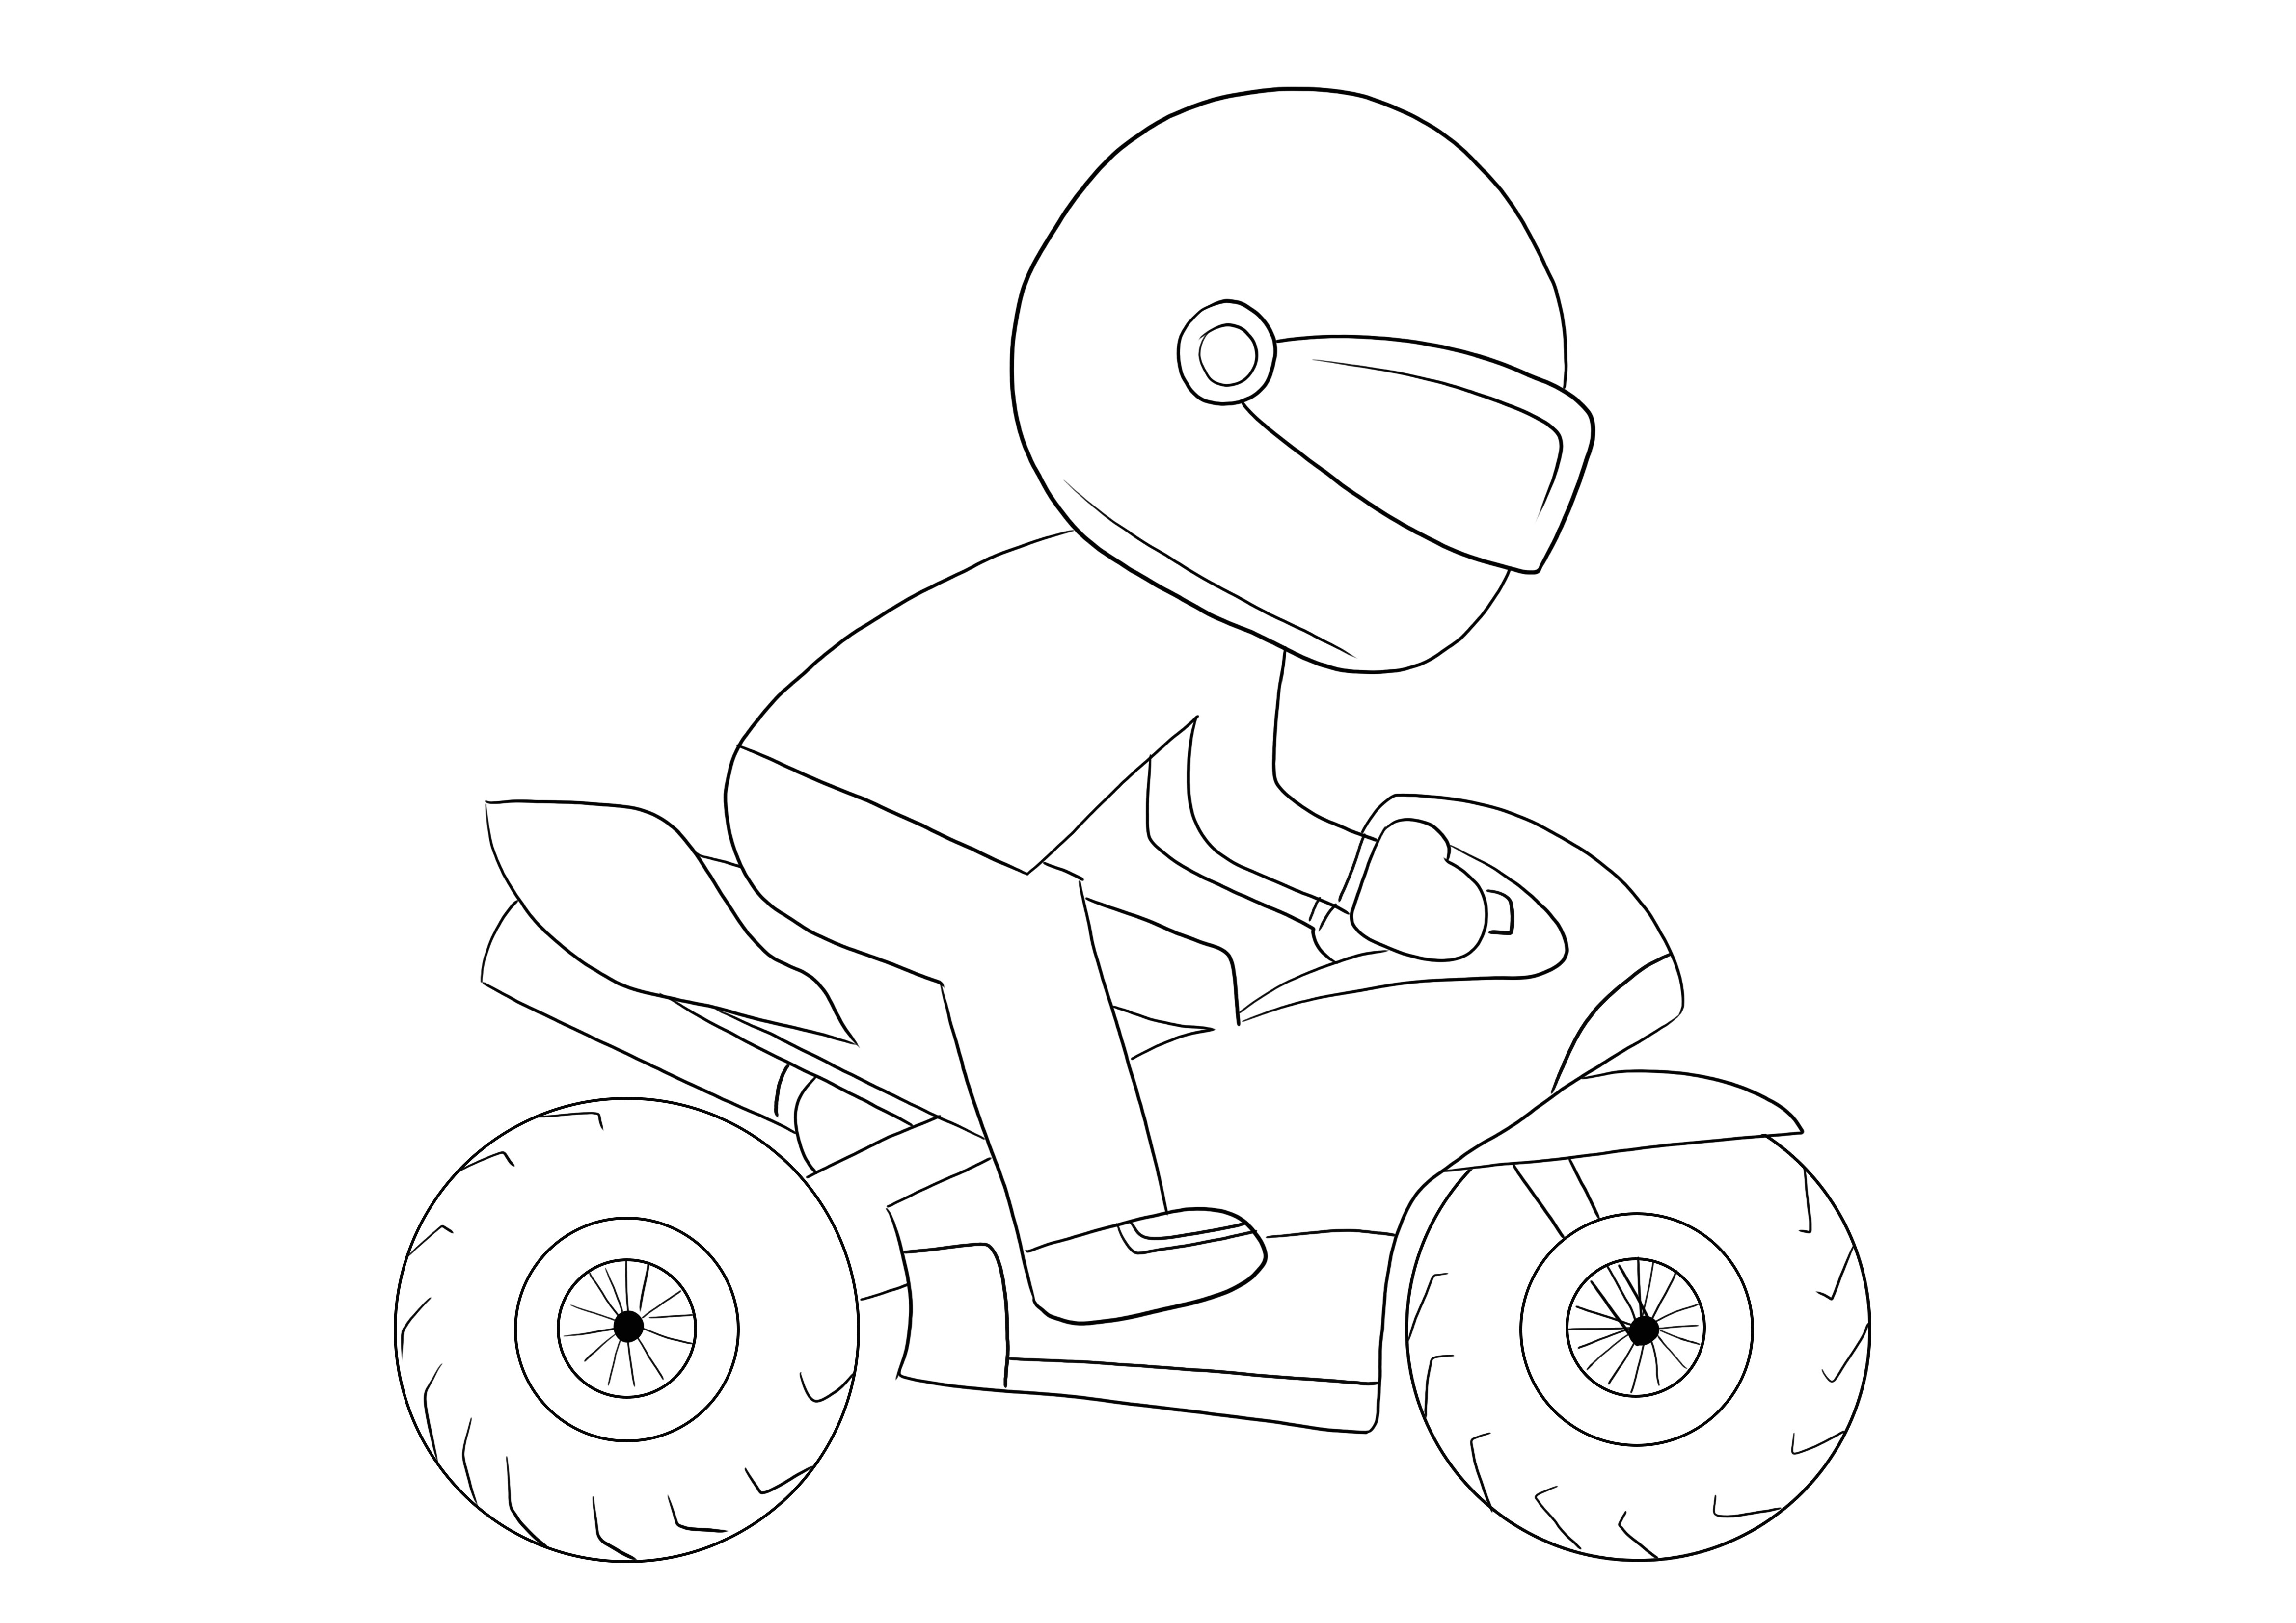 Moto et son motard à imprimer gratuitement pour colorier ou enregistrer pour une feuille ultérieure